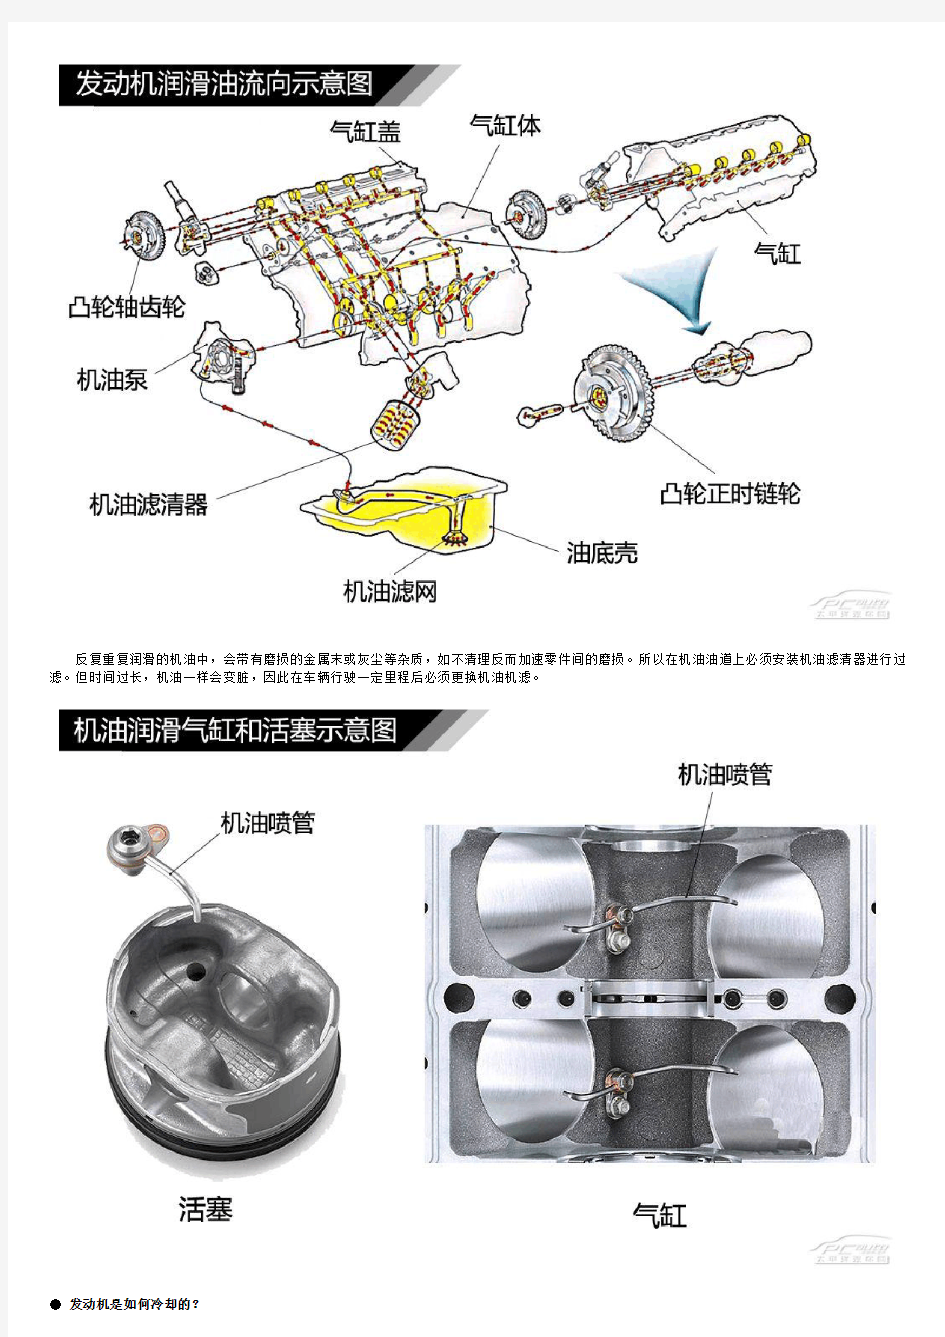 图解汽车(5) 发动机润滑-冷却系统解析